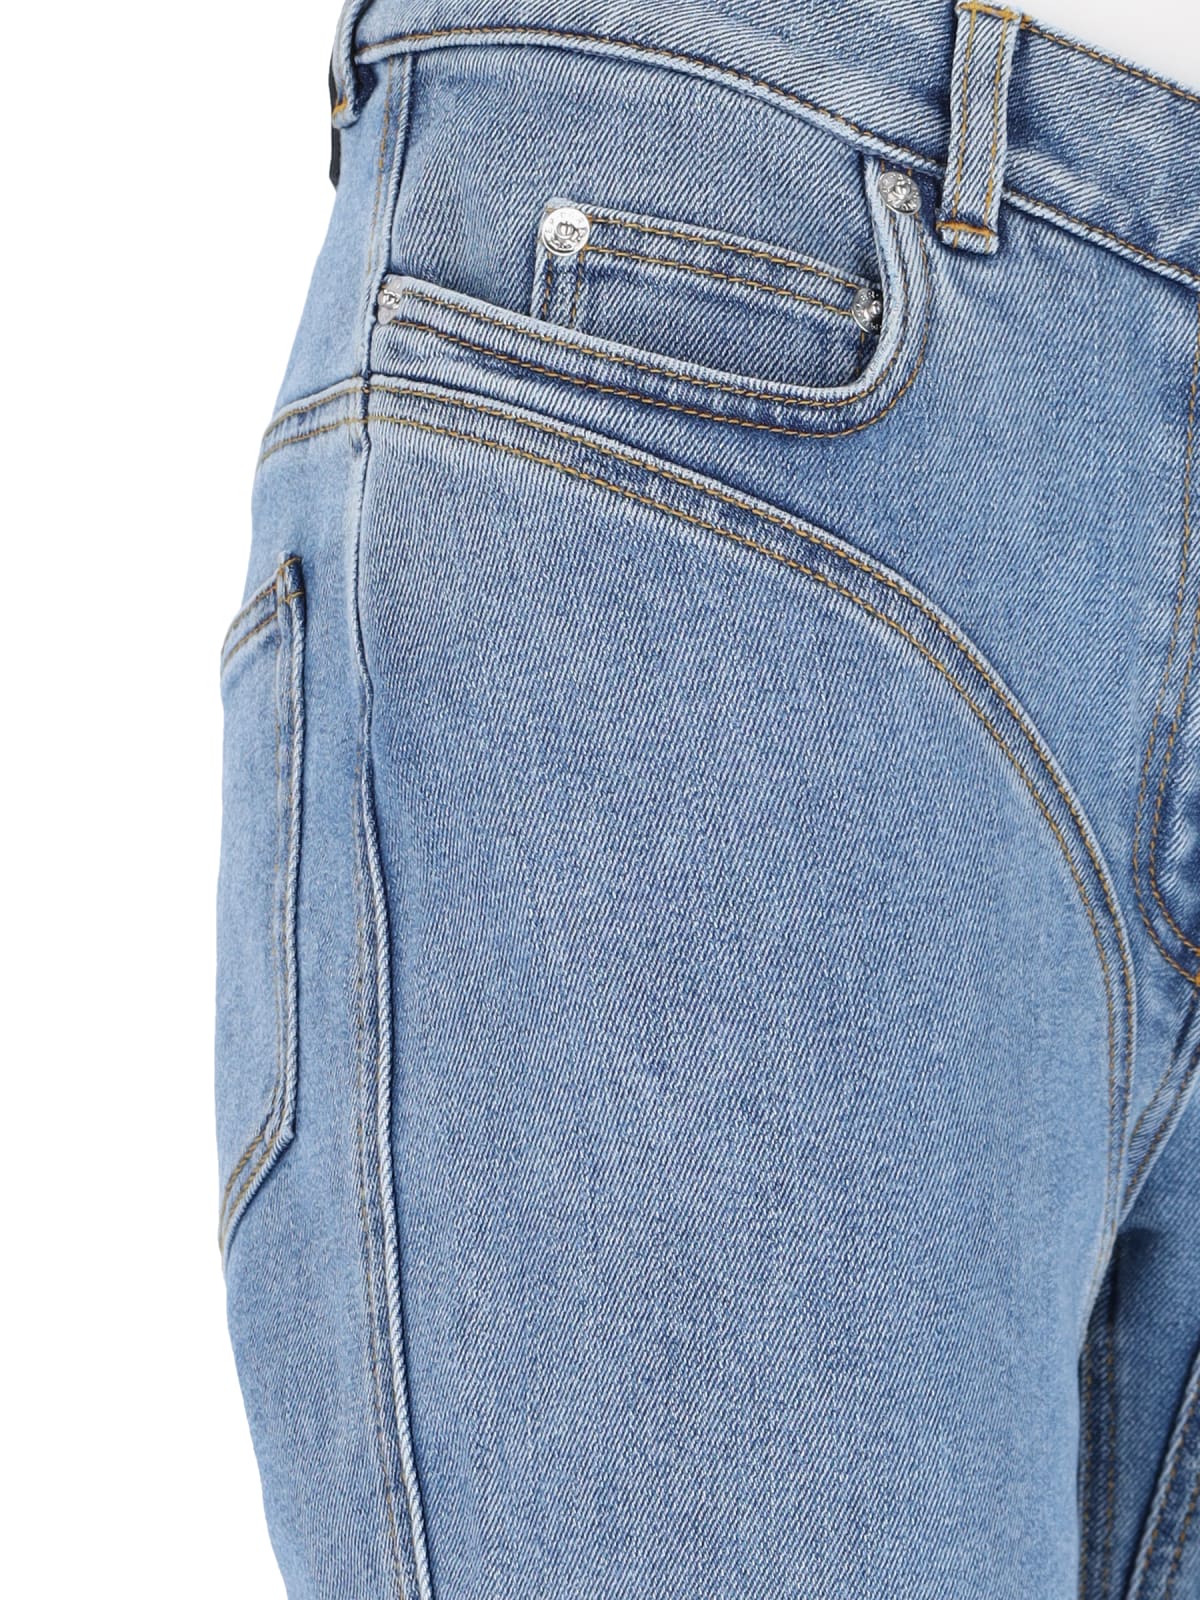 Shop Mugler Jeans Flare In Light Blue